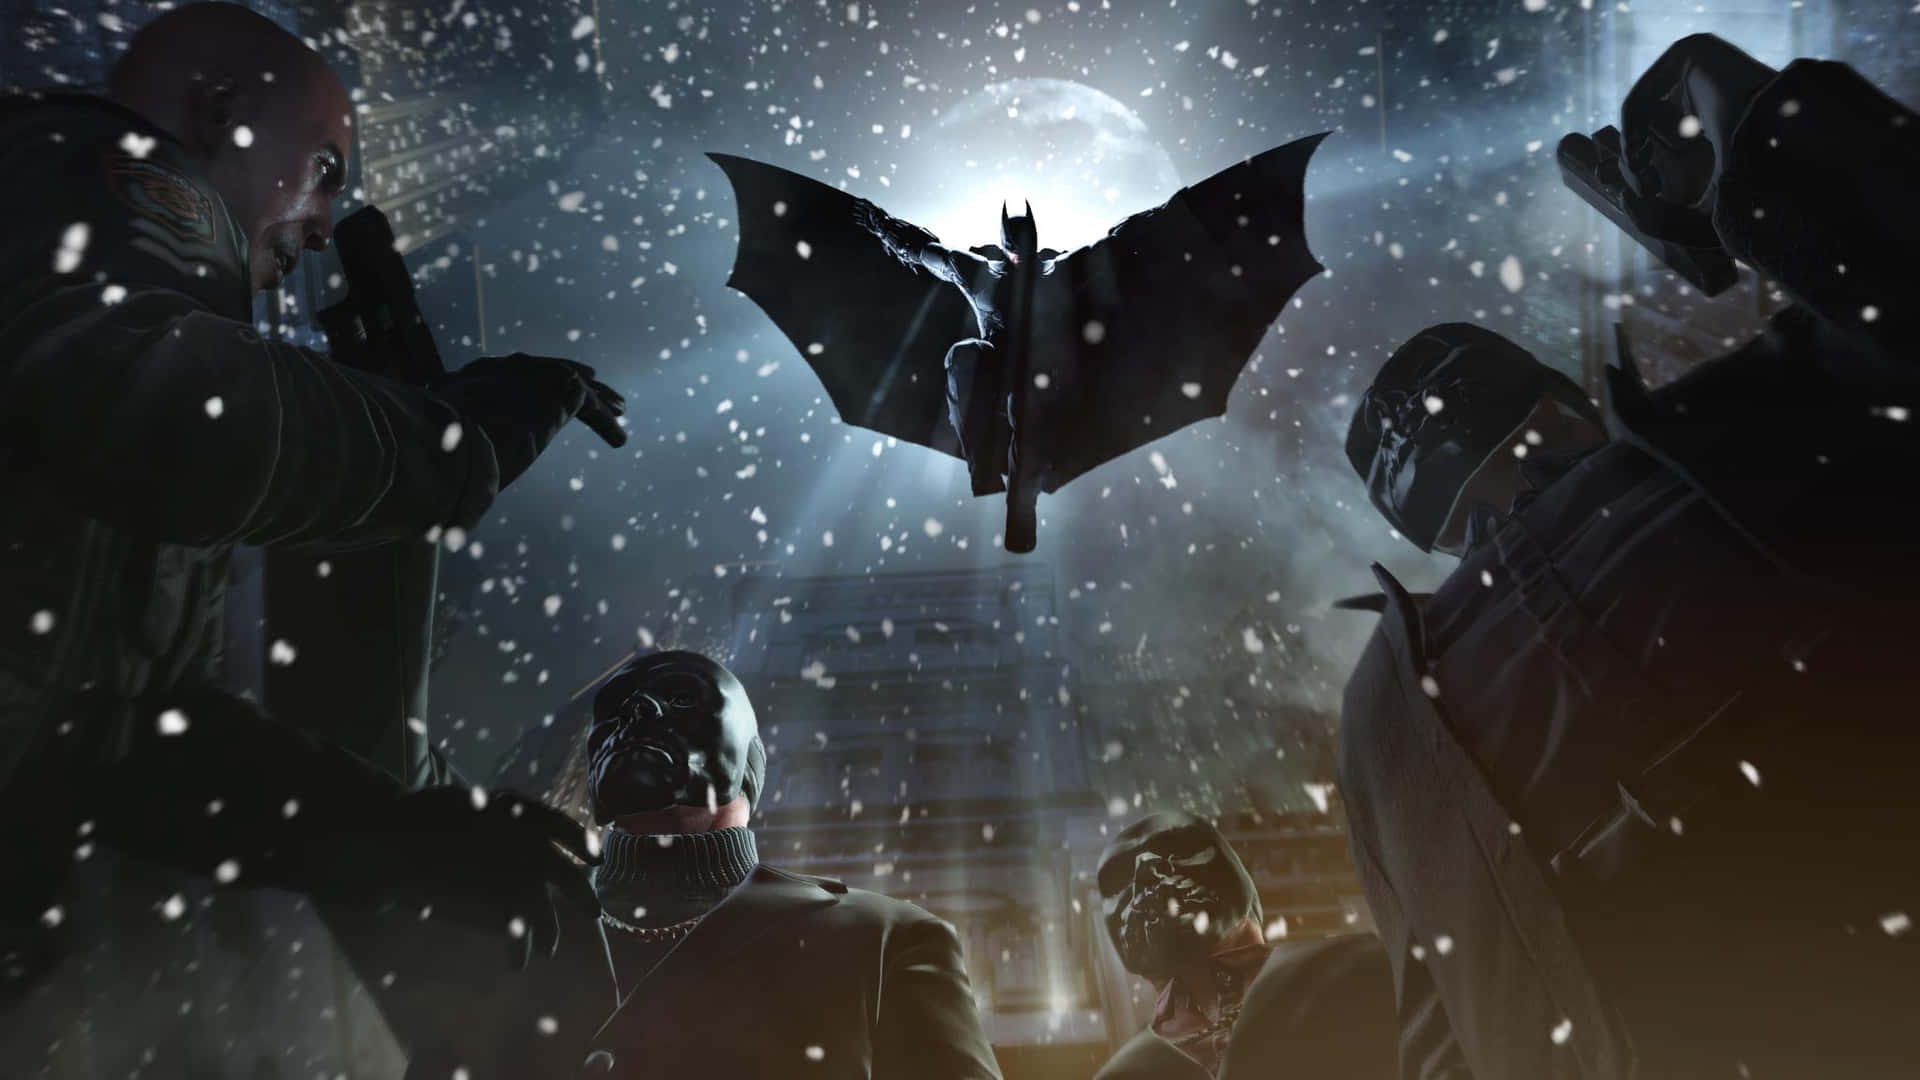 Ilcavaliere Oscuro Combatte Per La Giustizia In Batman Arkham Origins. Sfondo